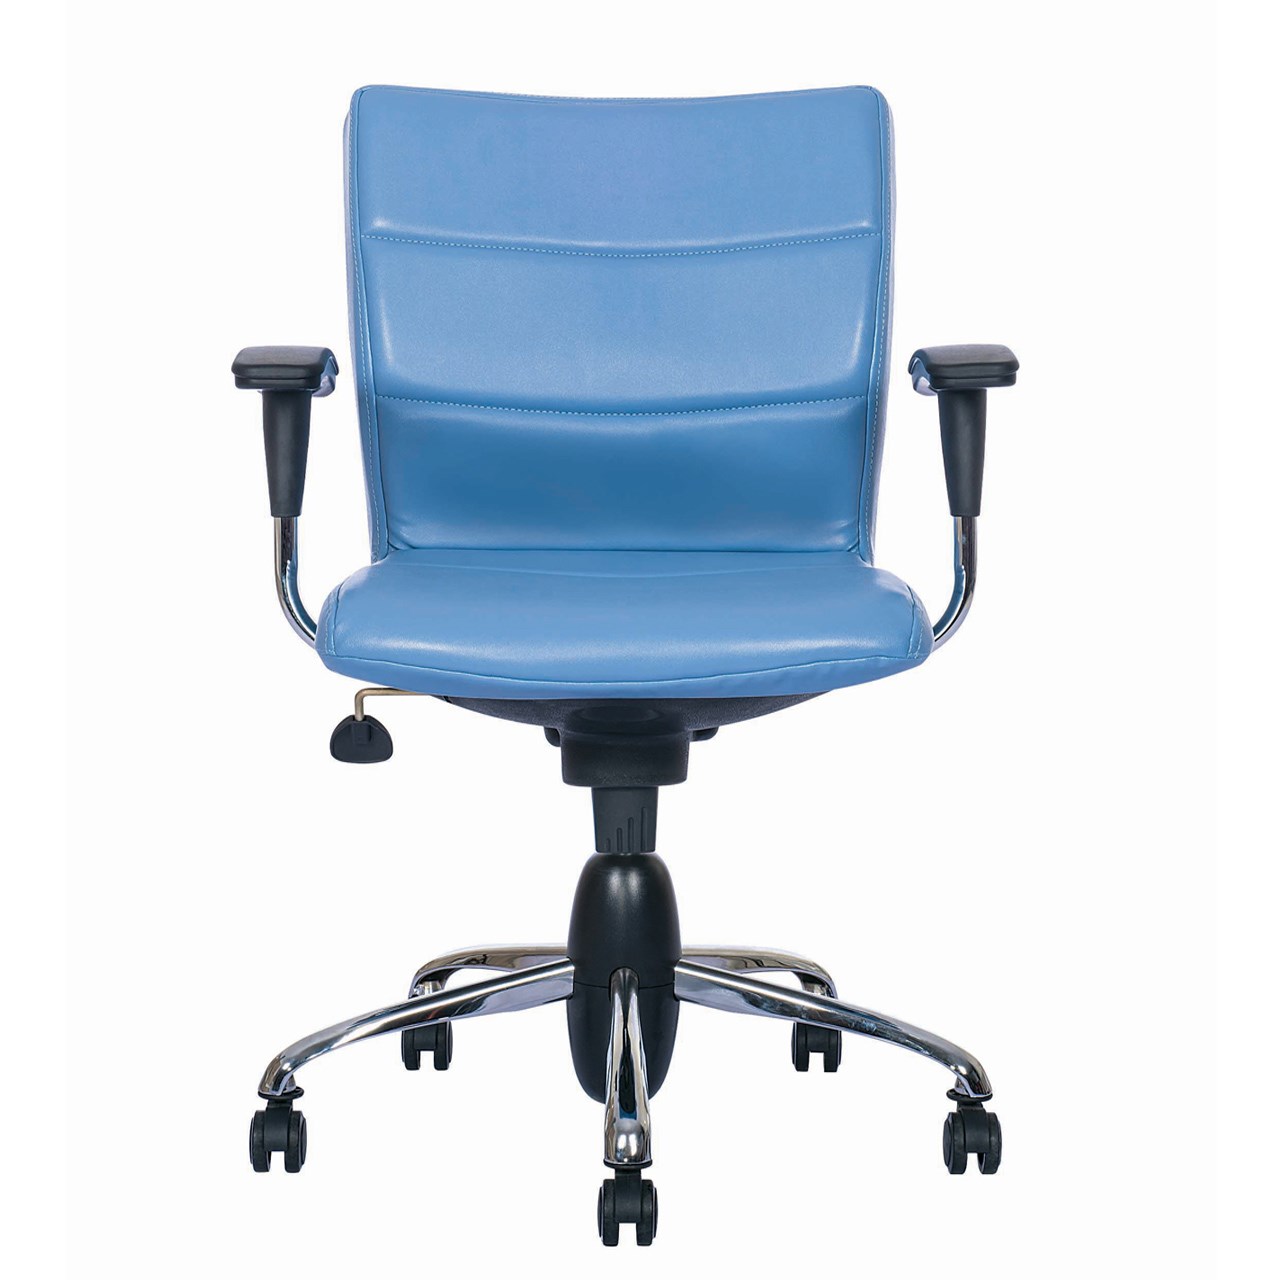 صندلی اداری نیلپر مدل SK603g چرمی